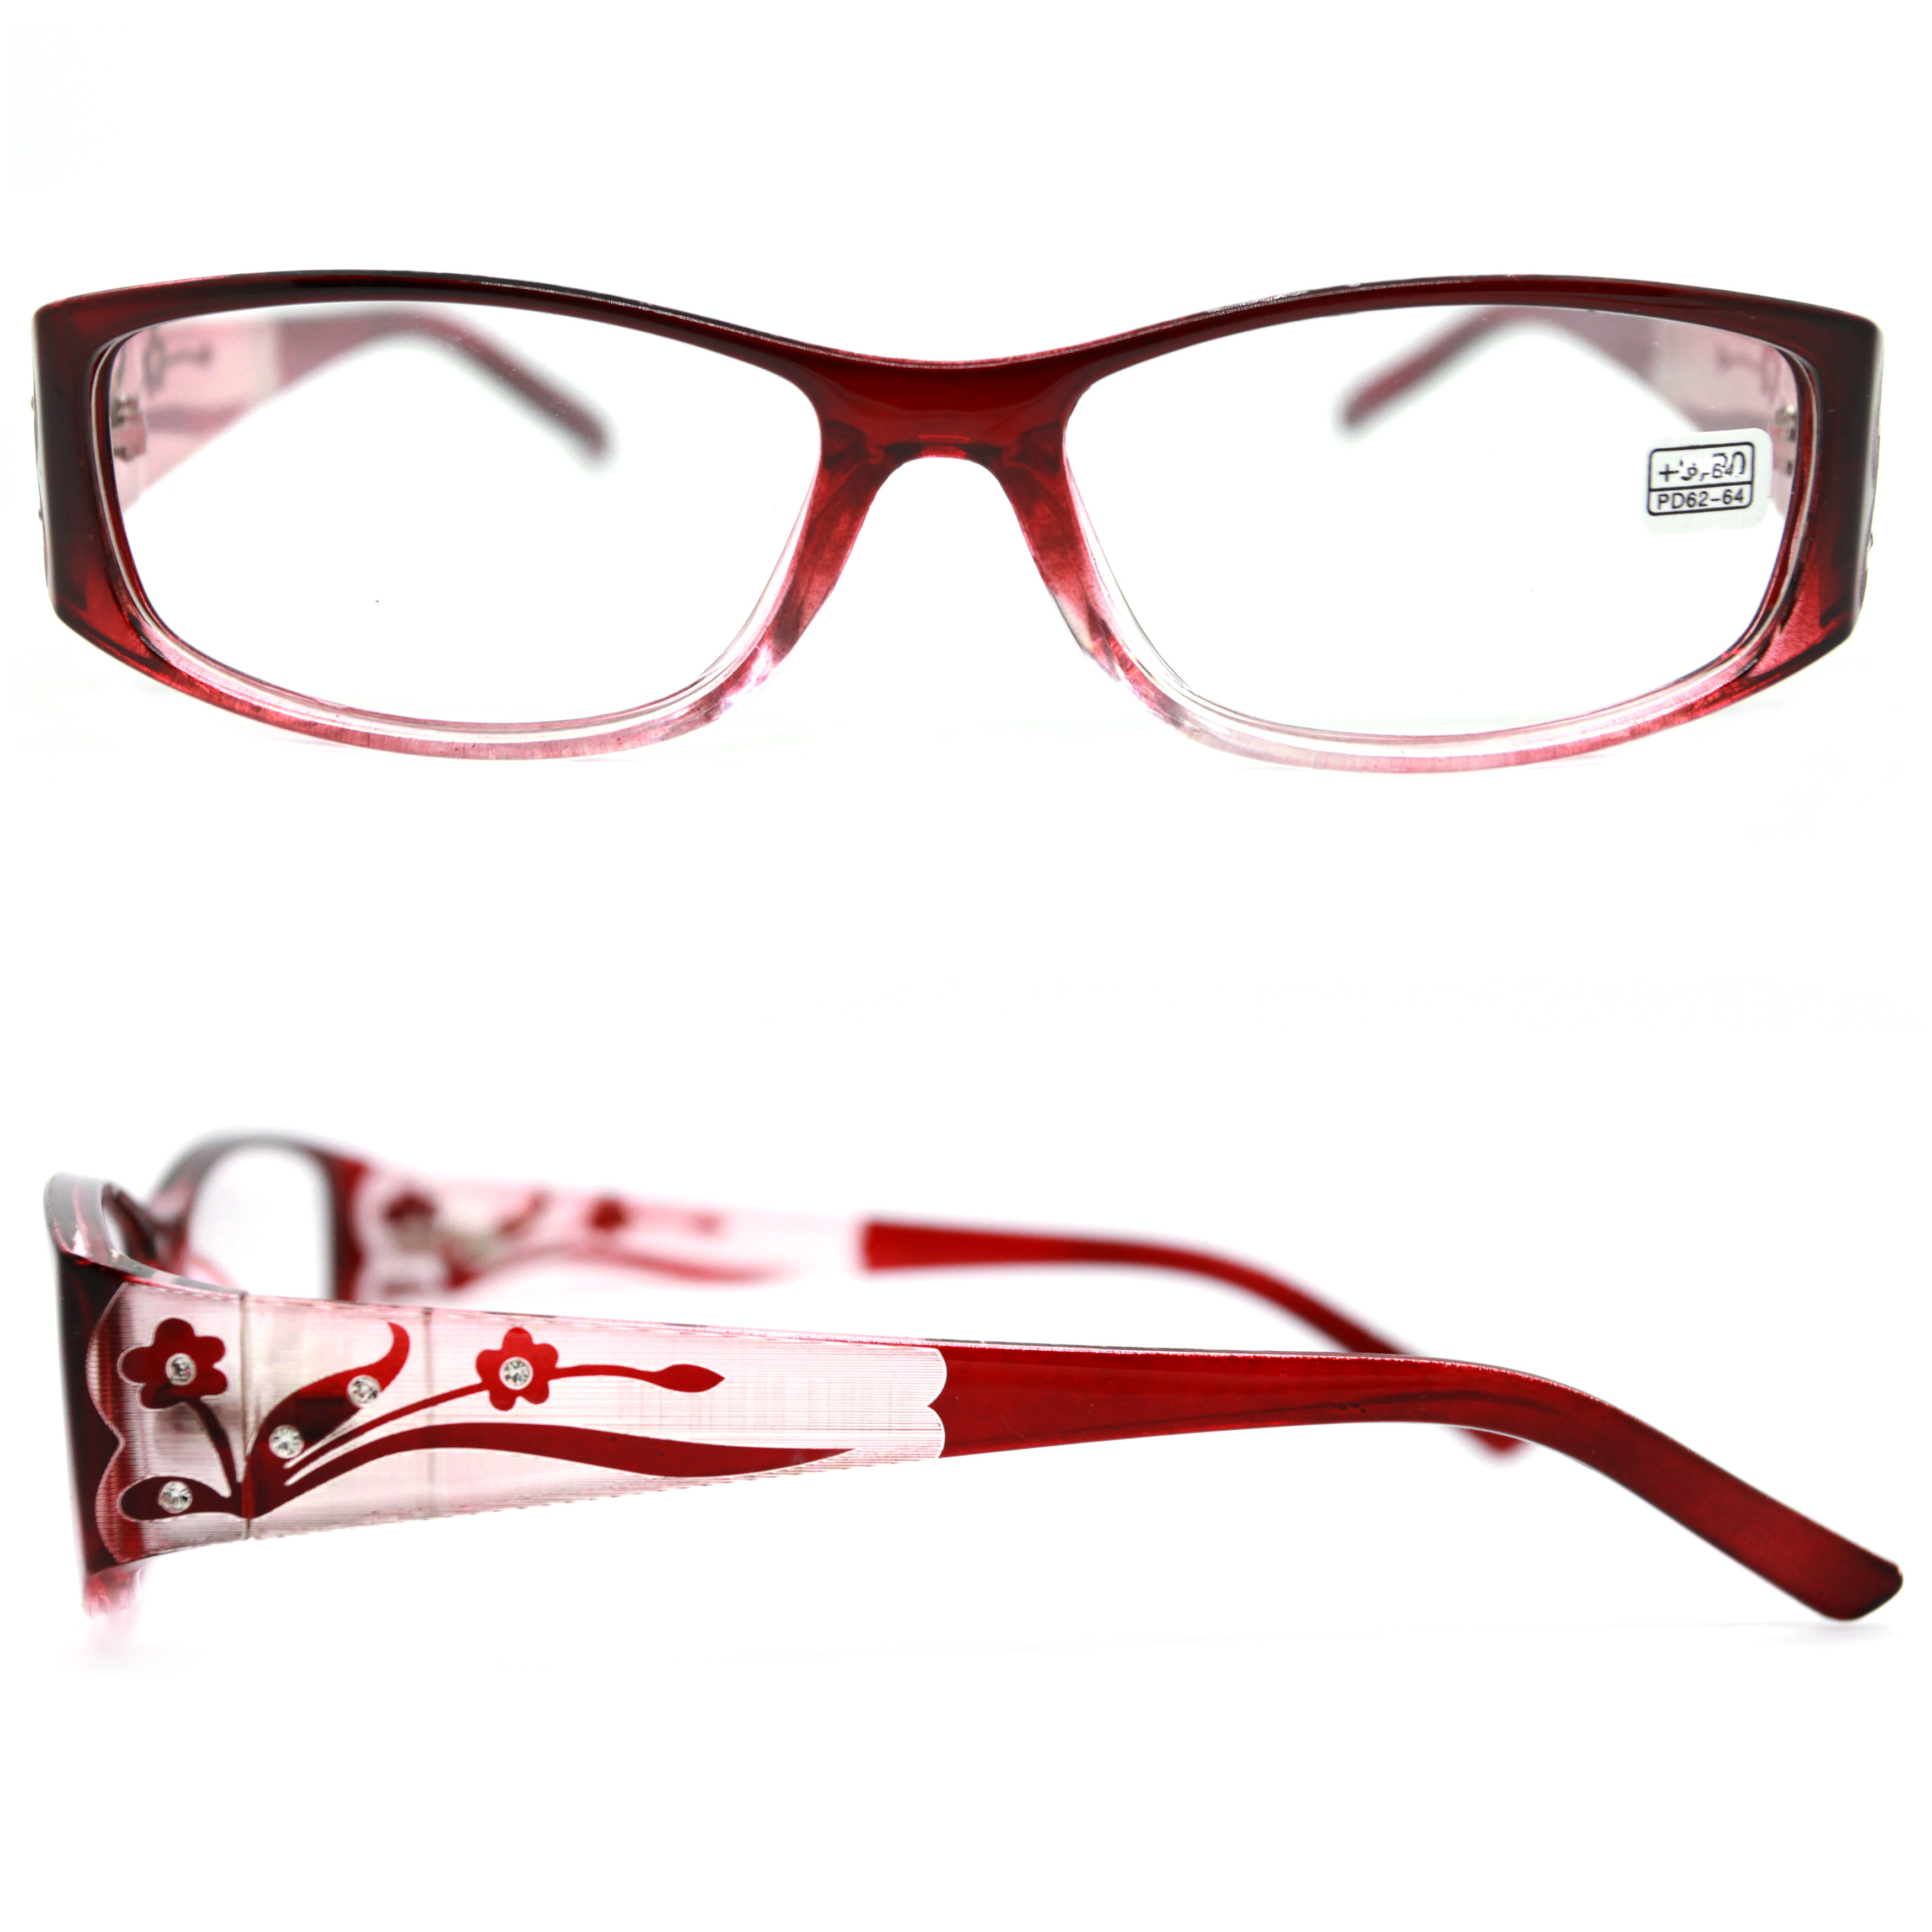 Готовые очки ВОСТОК 6614 +1,75, для чтения, бордовый, РЦ 62-64